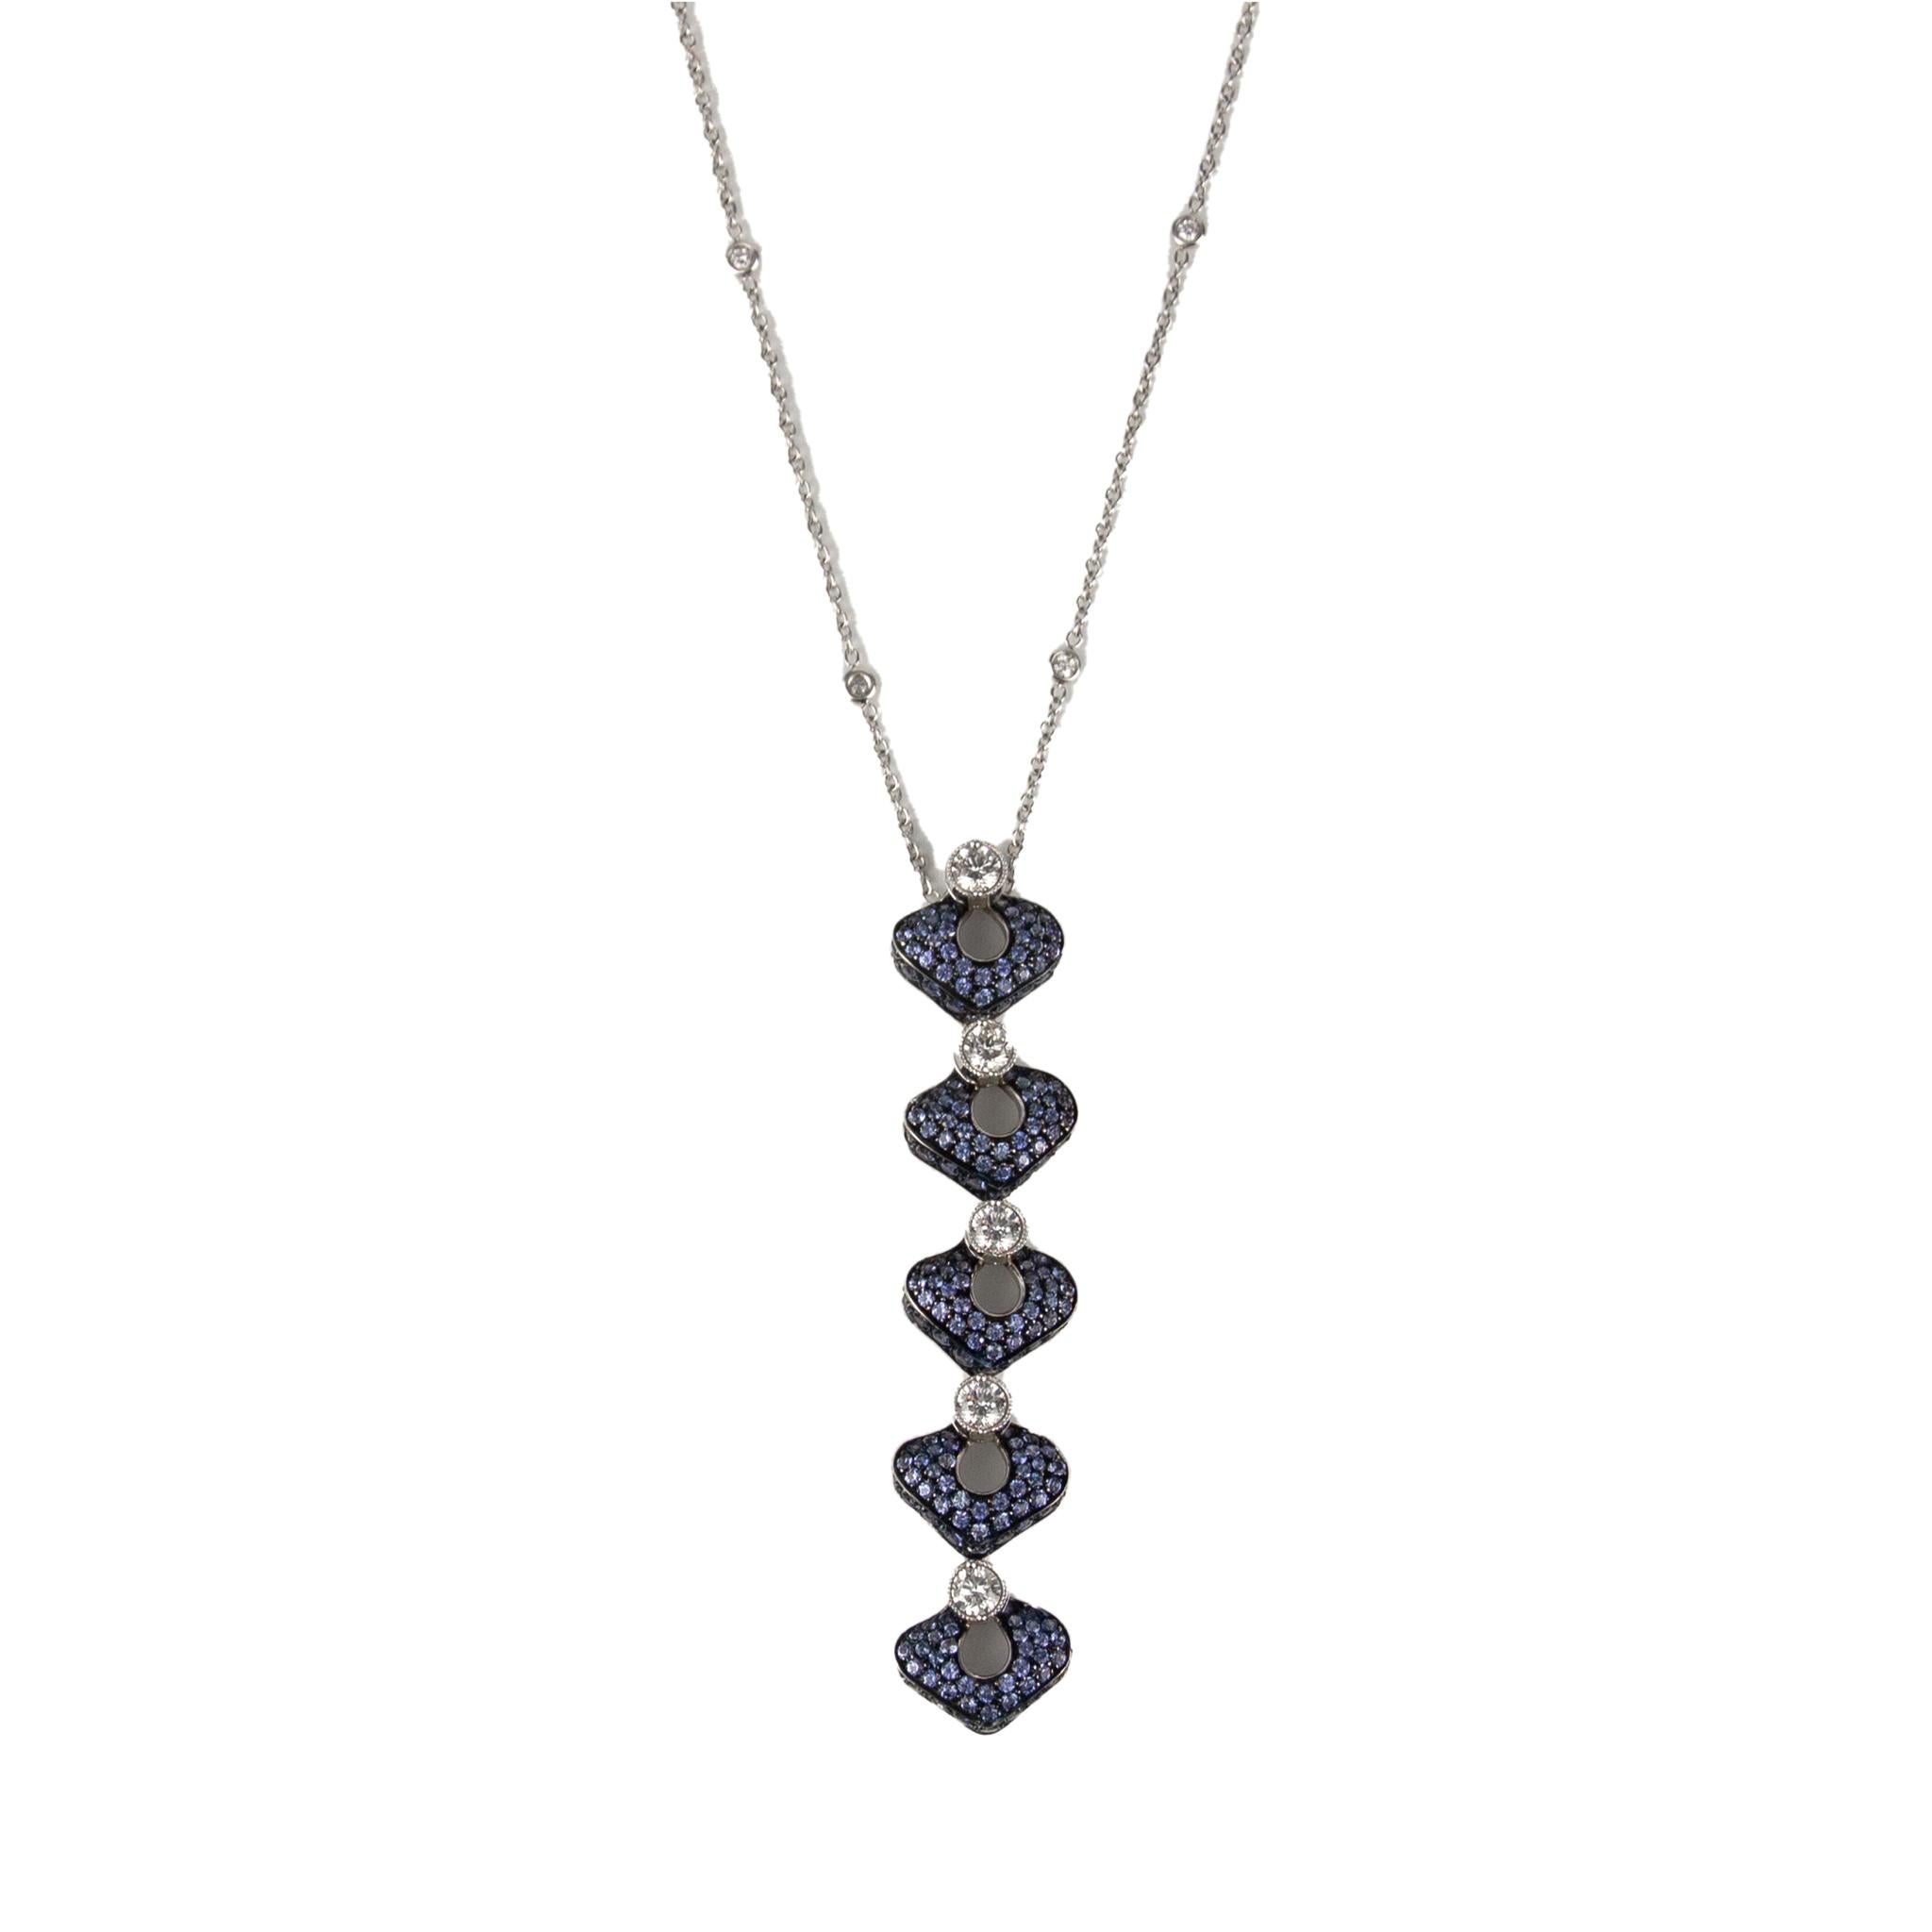 IO SI 18K White Gold Necklace
Diamond: 0.38ctw
Sapphire: 5.00ctw
SKU: BLU01981
Retail price: $14,450.00